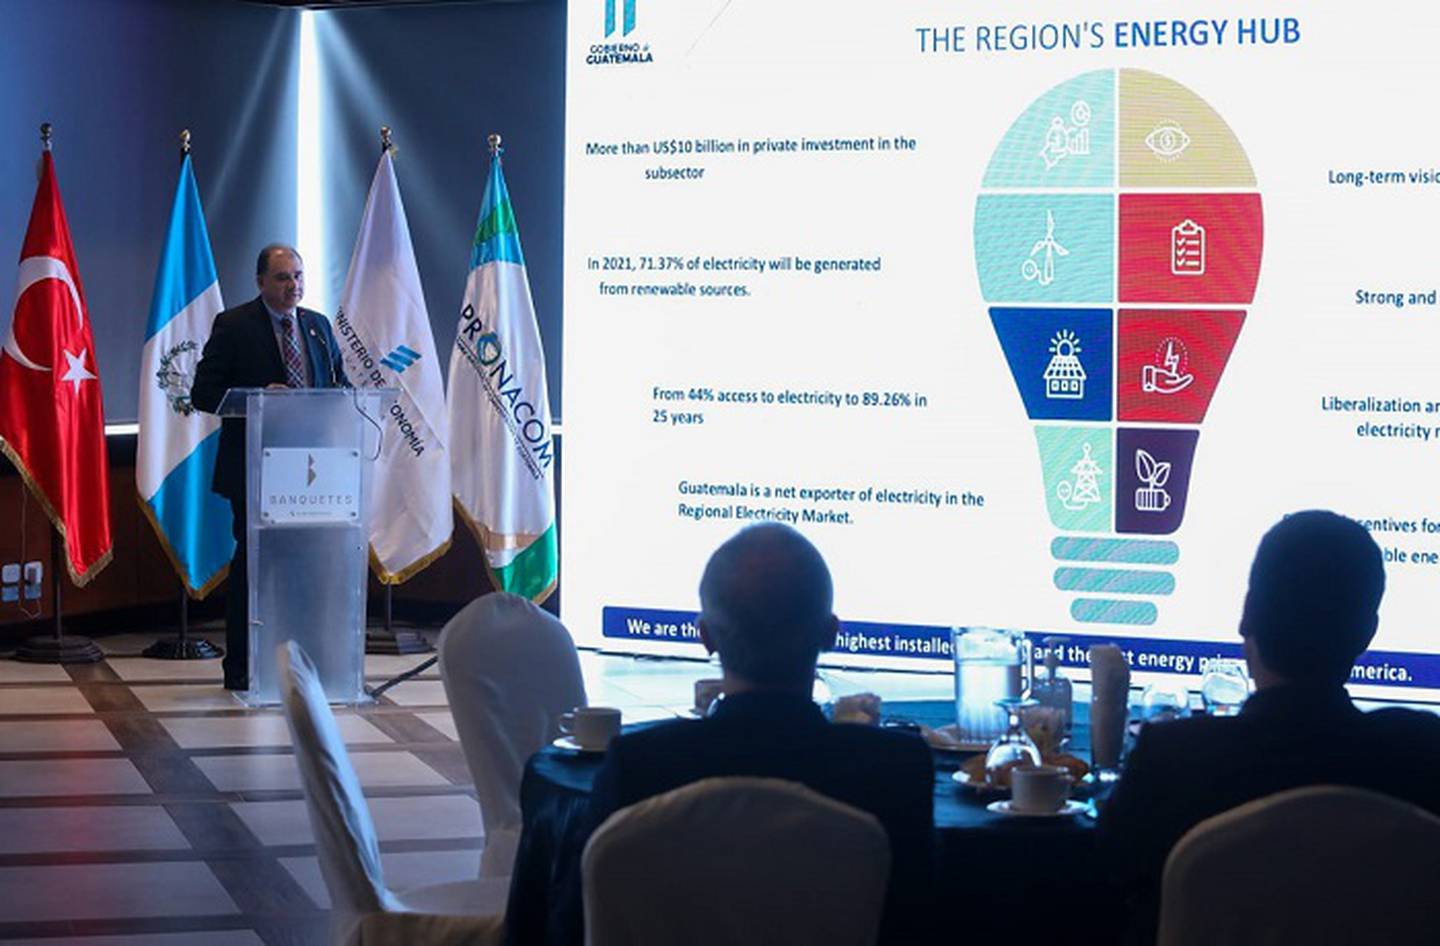 El viceministro de Energía y Minas, Manuel Eduardo Arita, llevó a cabo una presentación en la cual dio a conocer a Guatemala como el hub energético de la región centroamericana.dfd